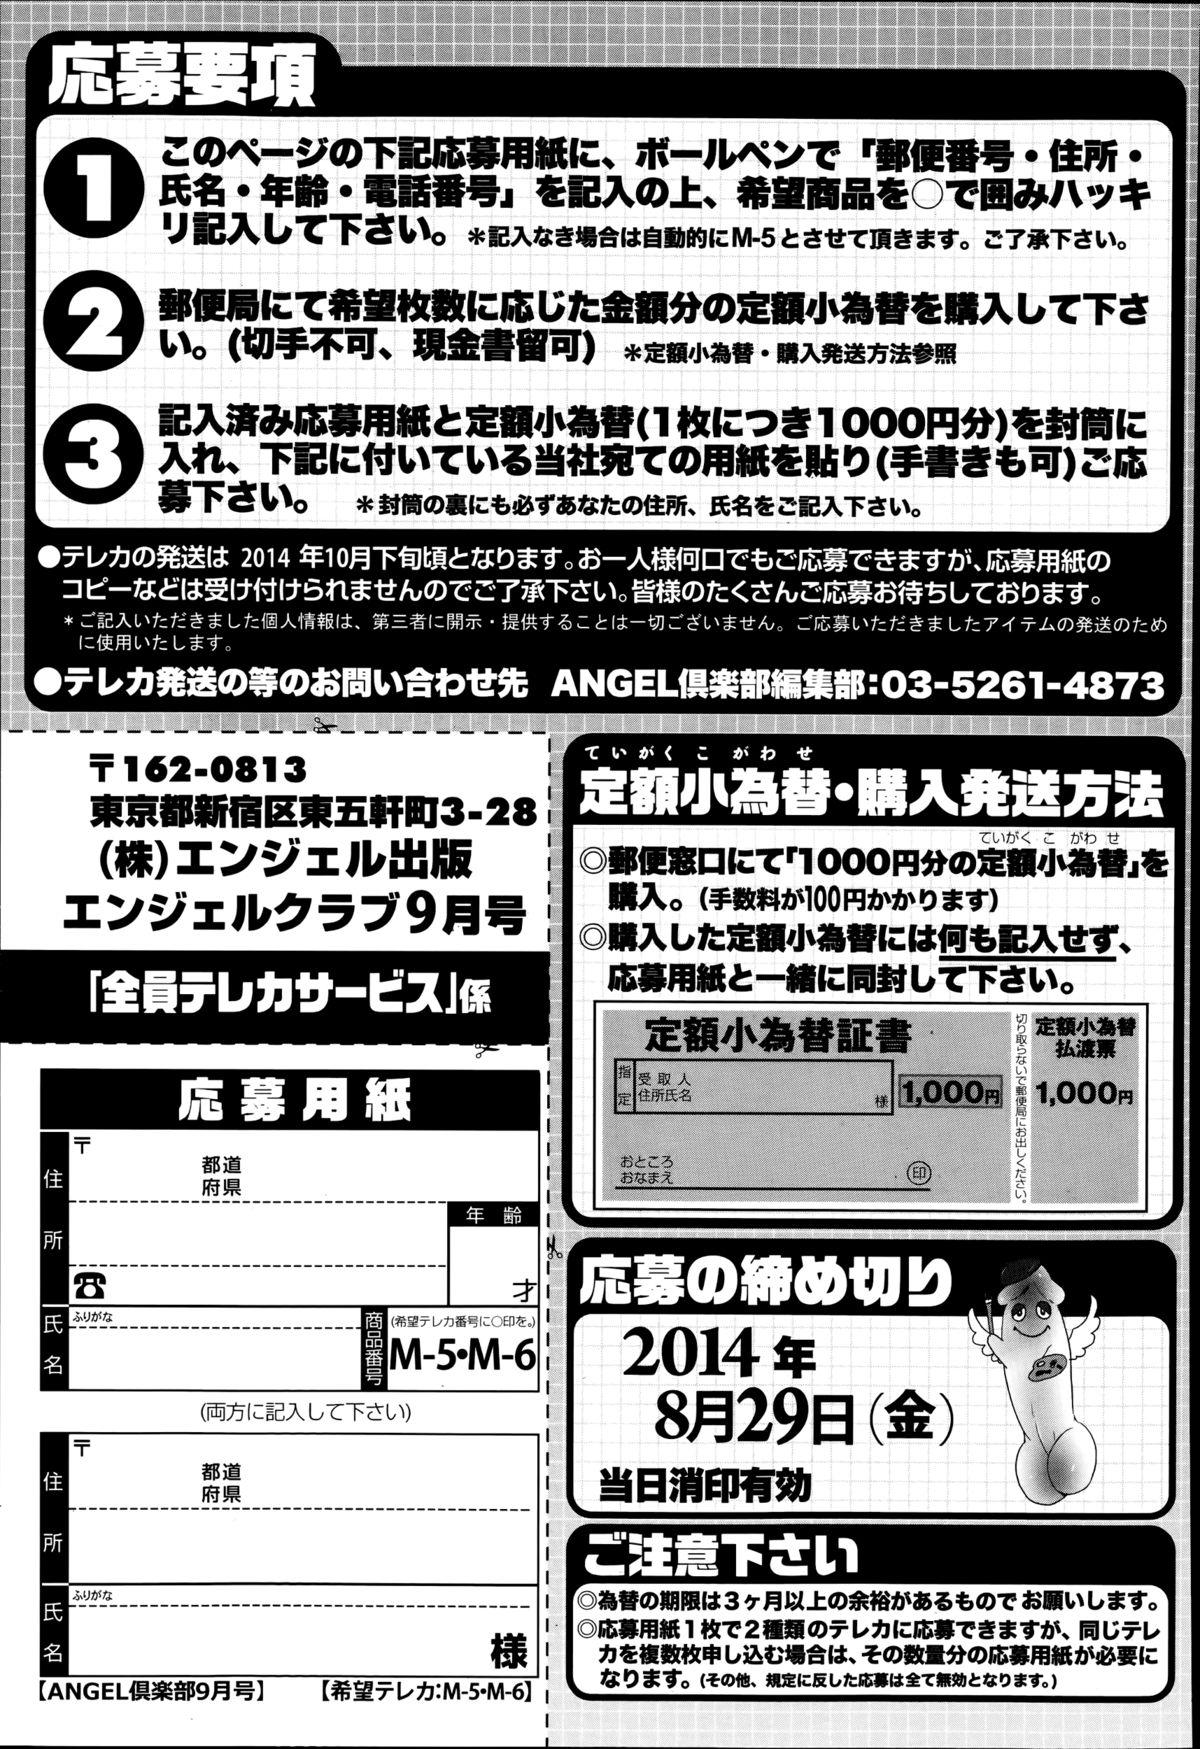 ANGEL Club 2014-09 206